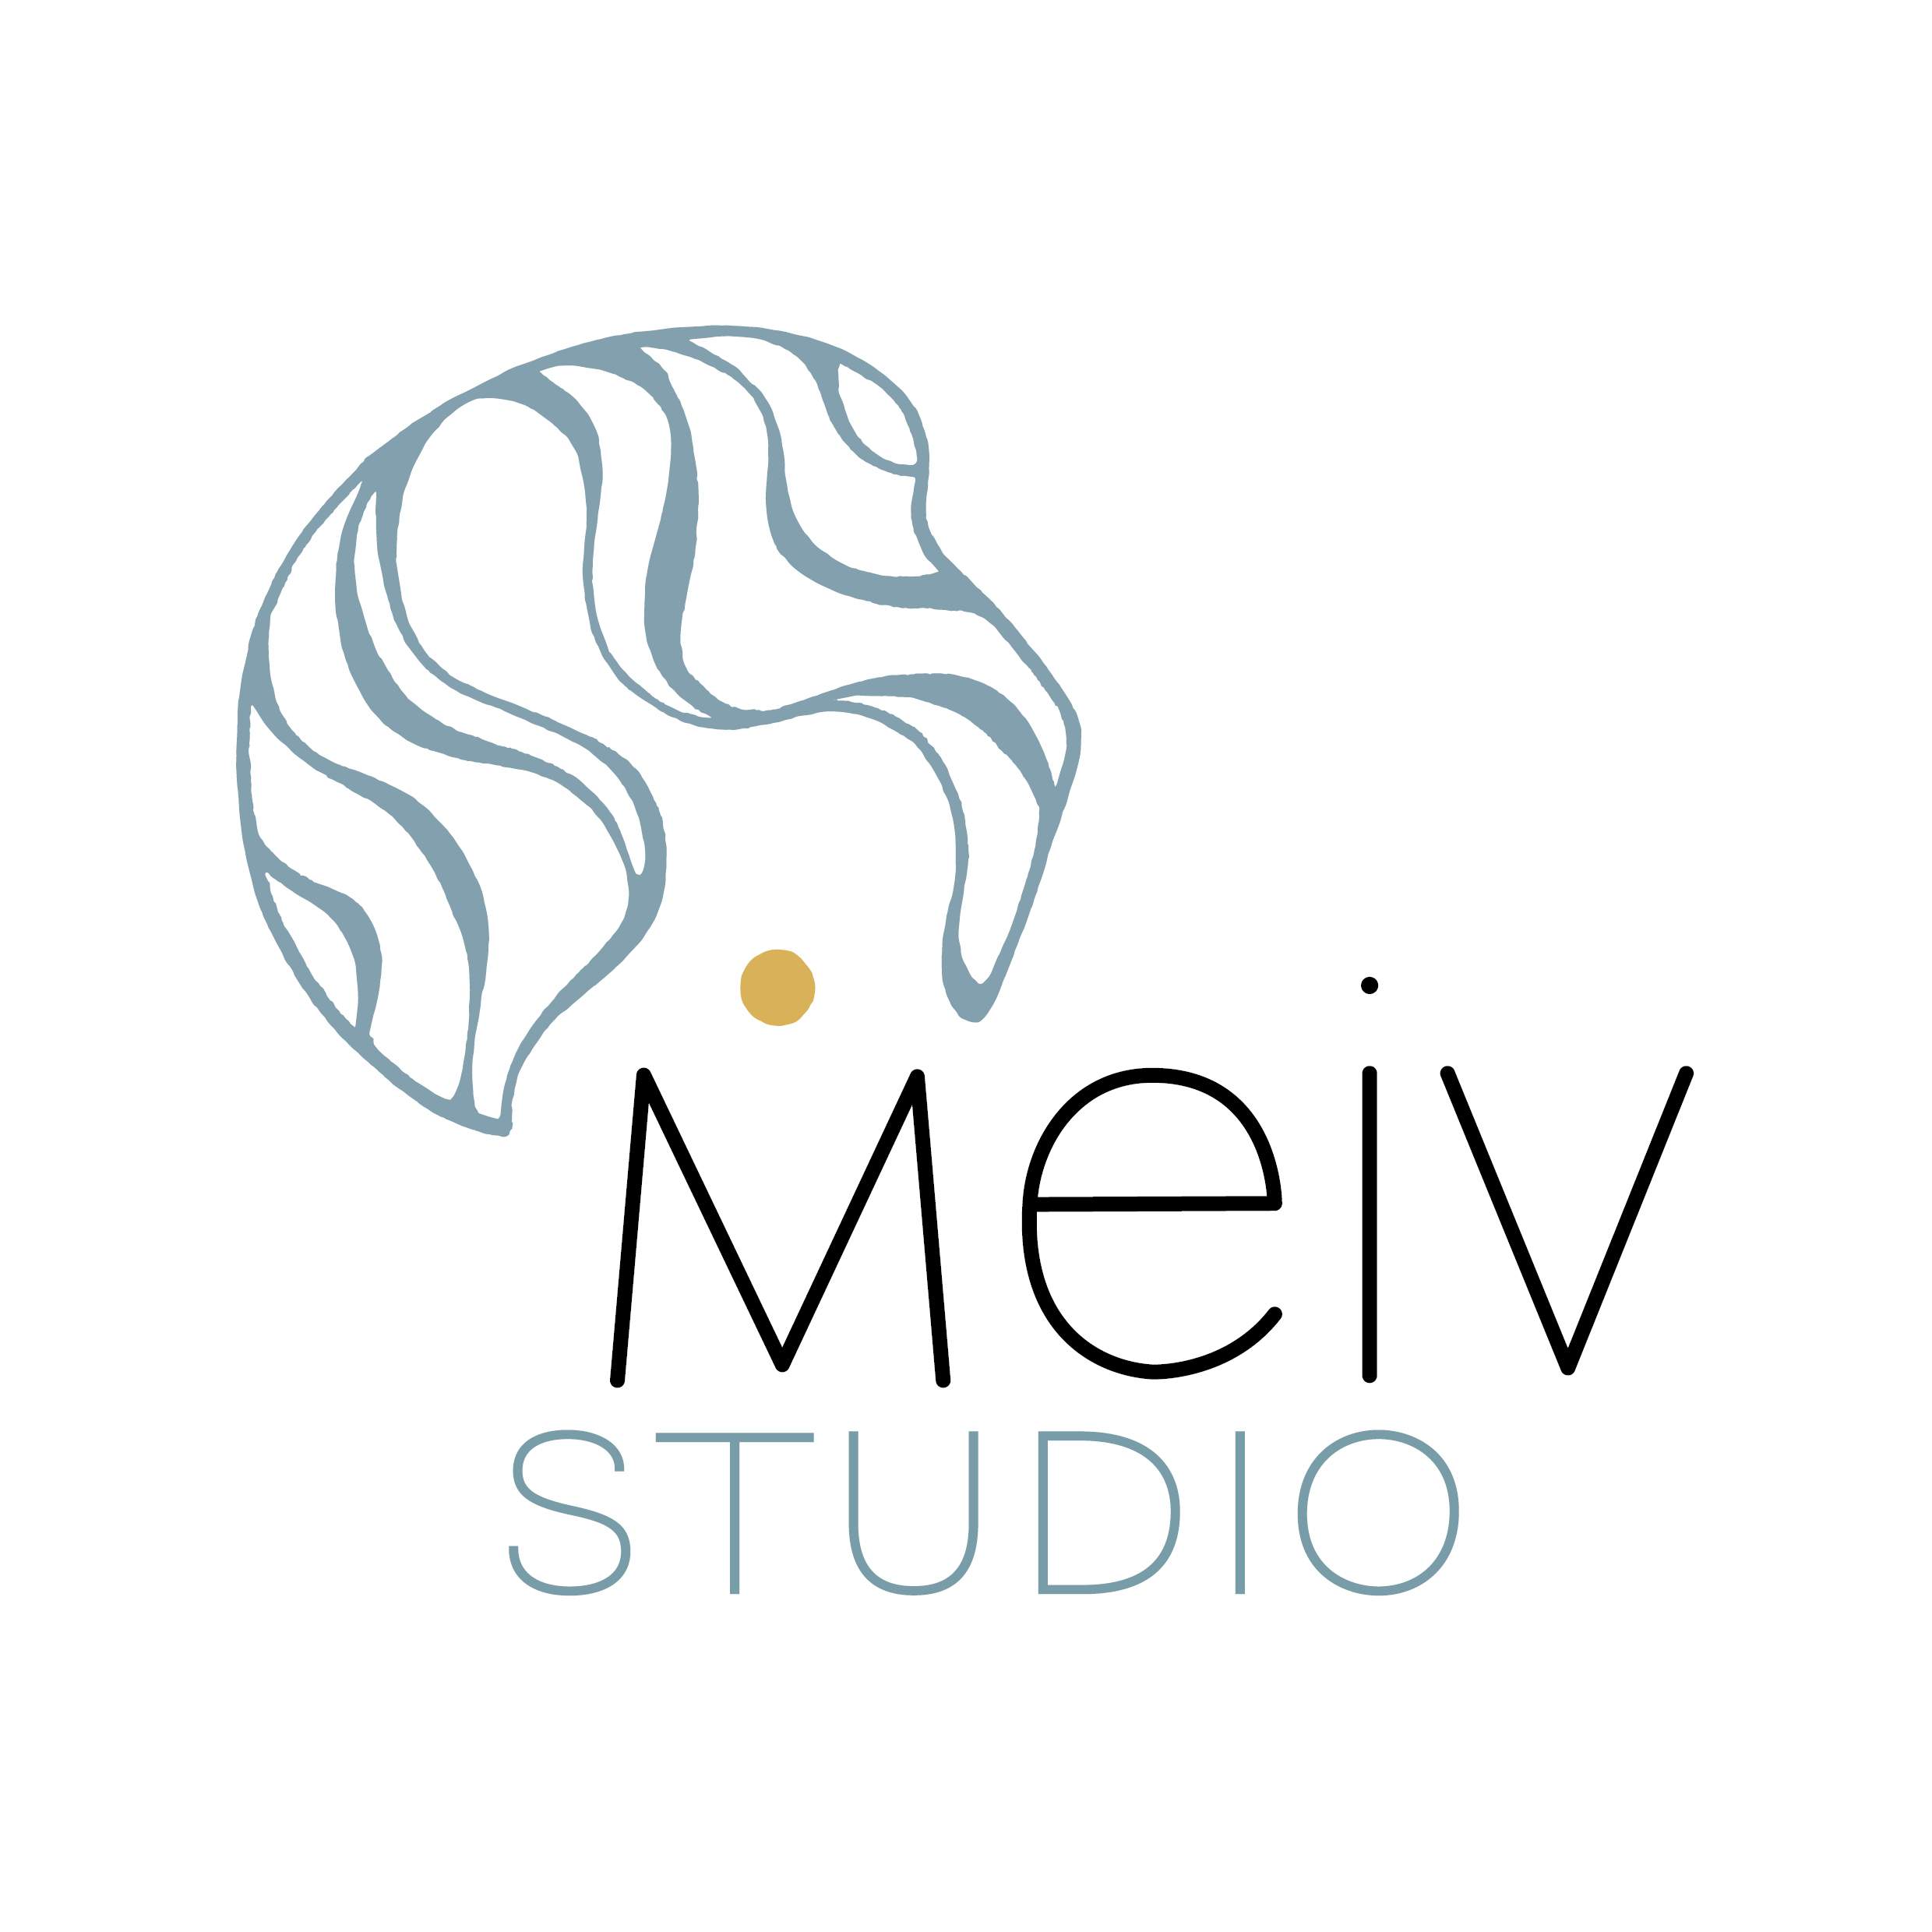 Il s'agit du logo complet MEIV Studio au format .jpg fondé par Manon Aguenier